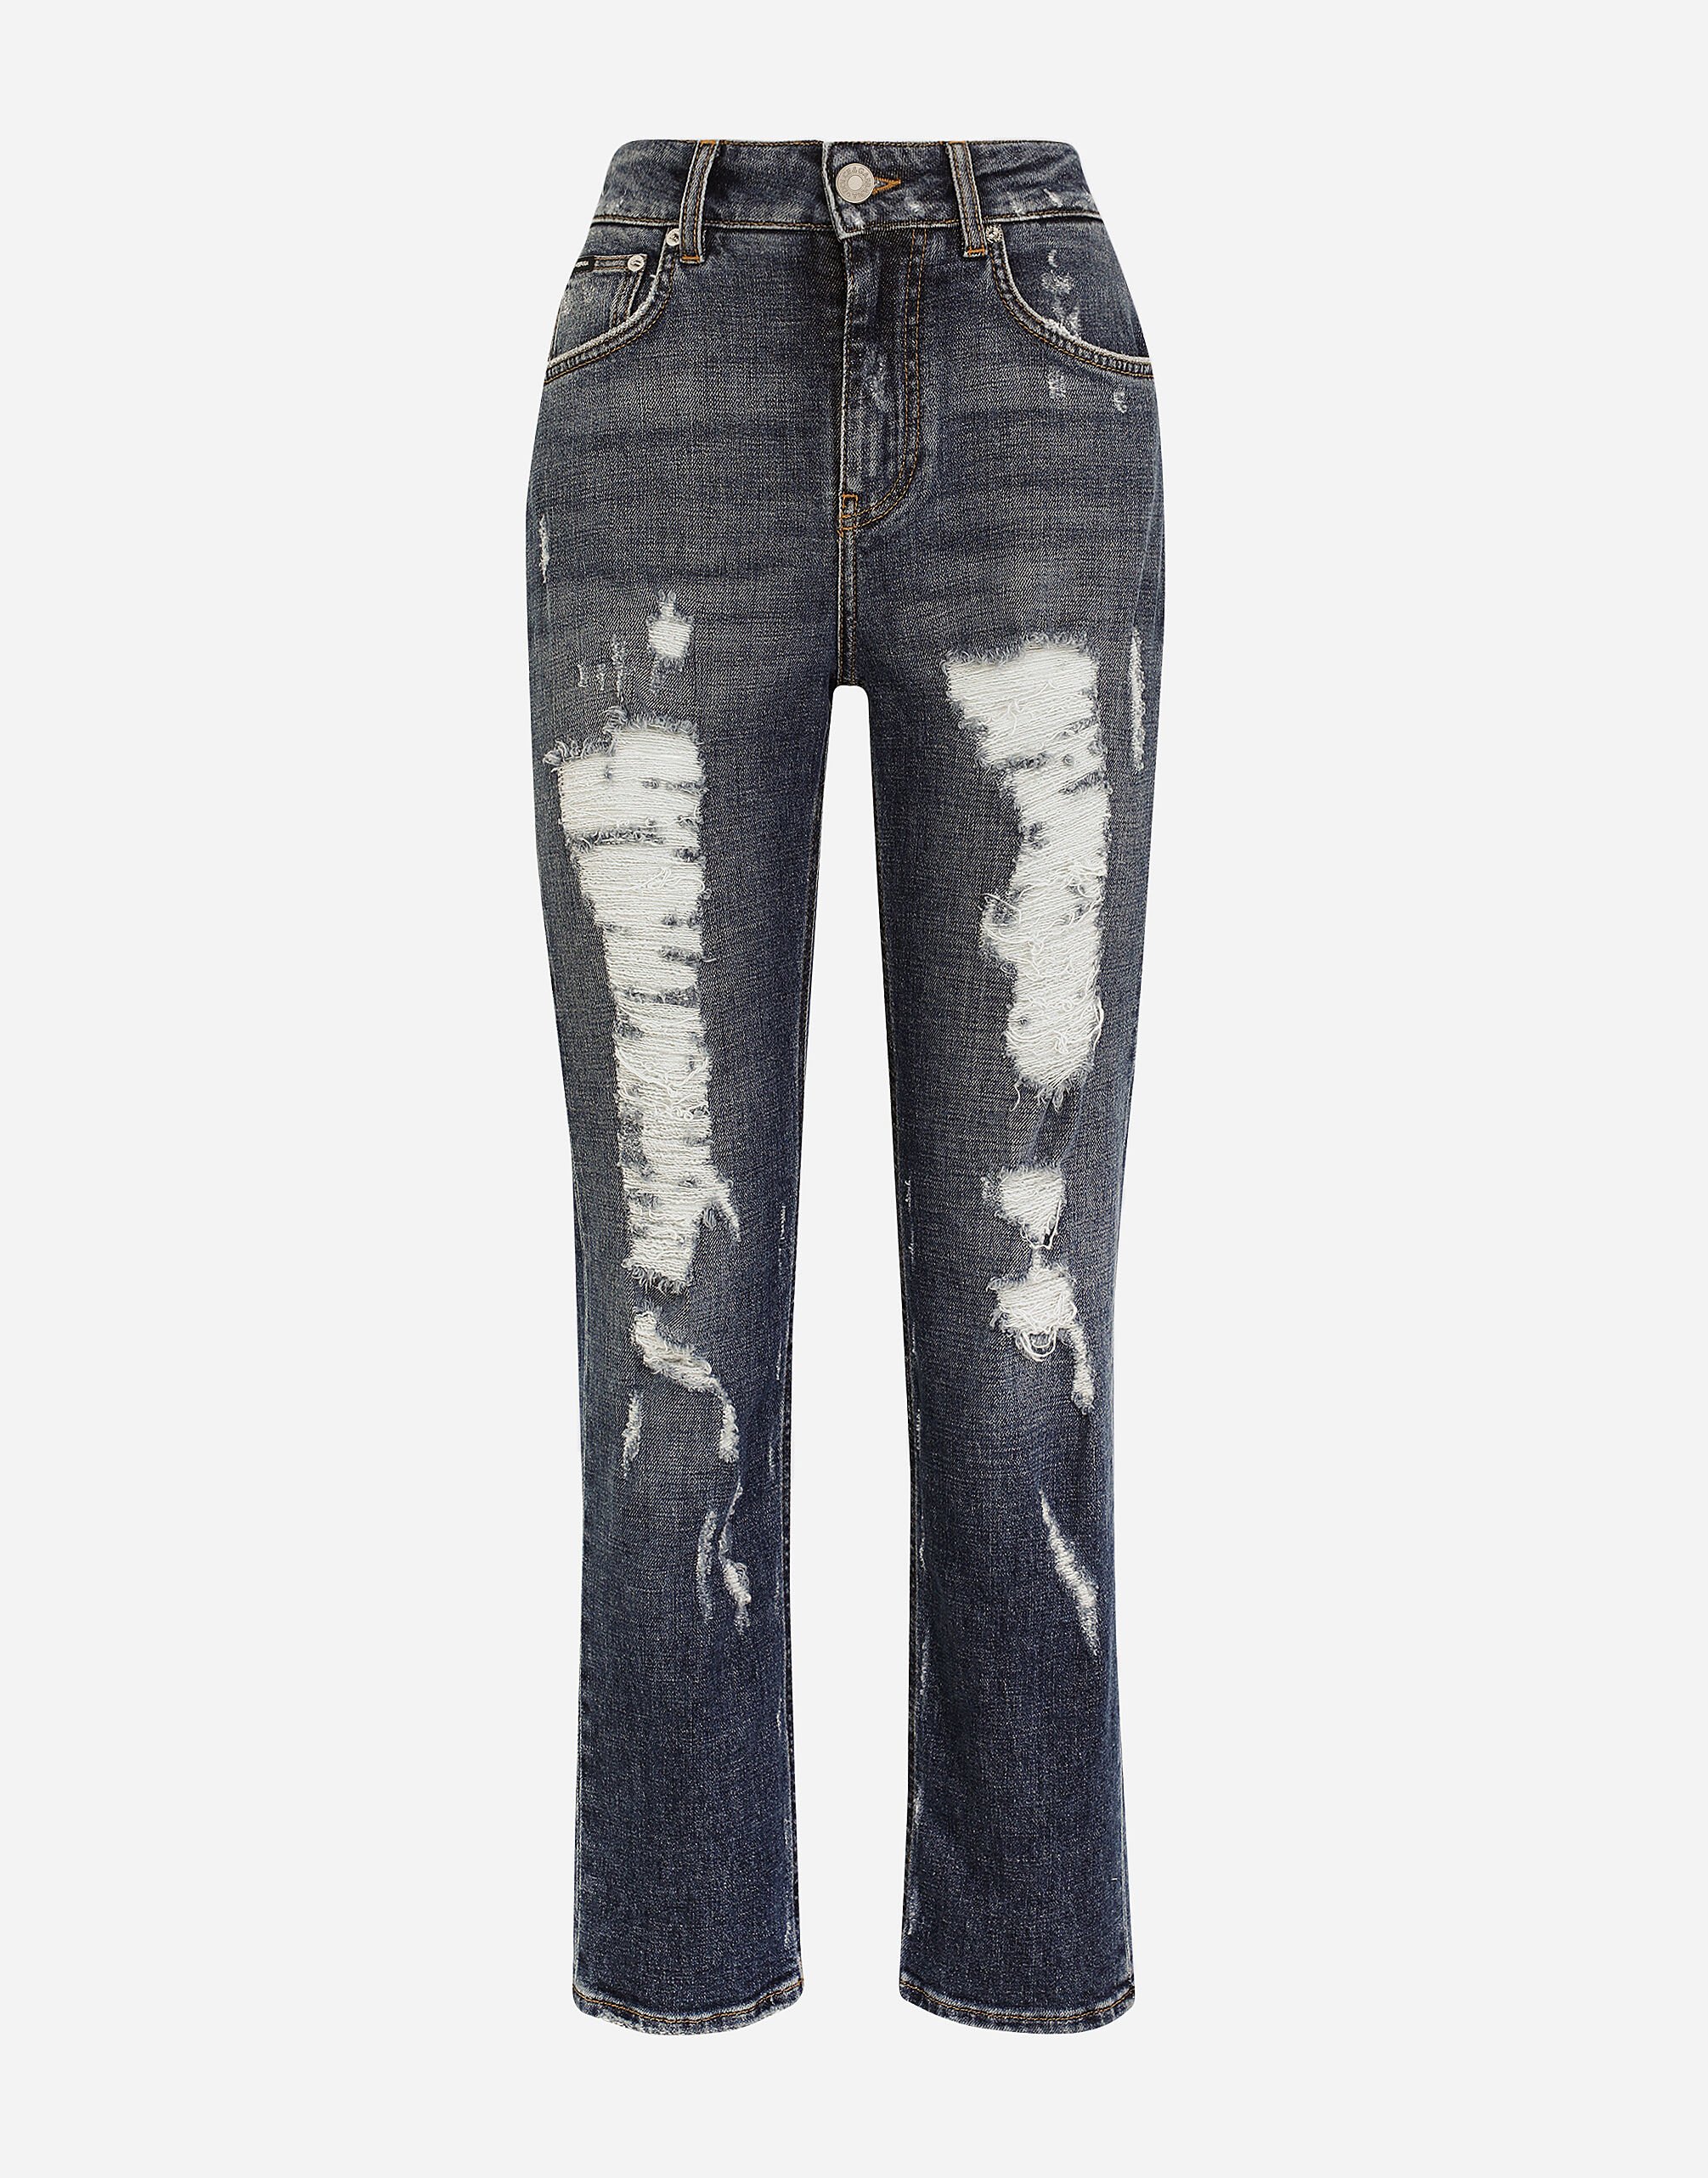 Dolce & Gabbana Boyfriend jeans with rips Denim BB6498AO621